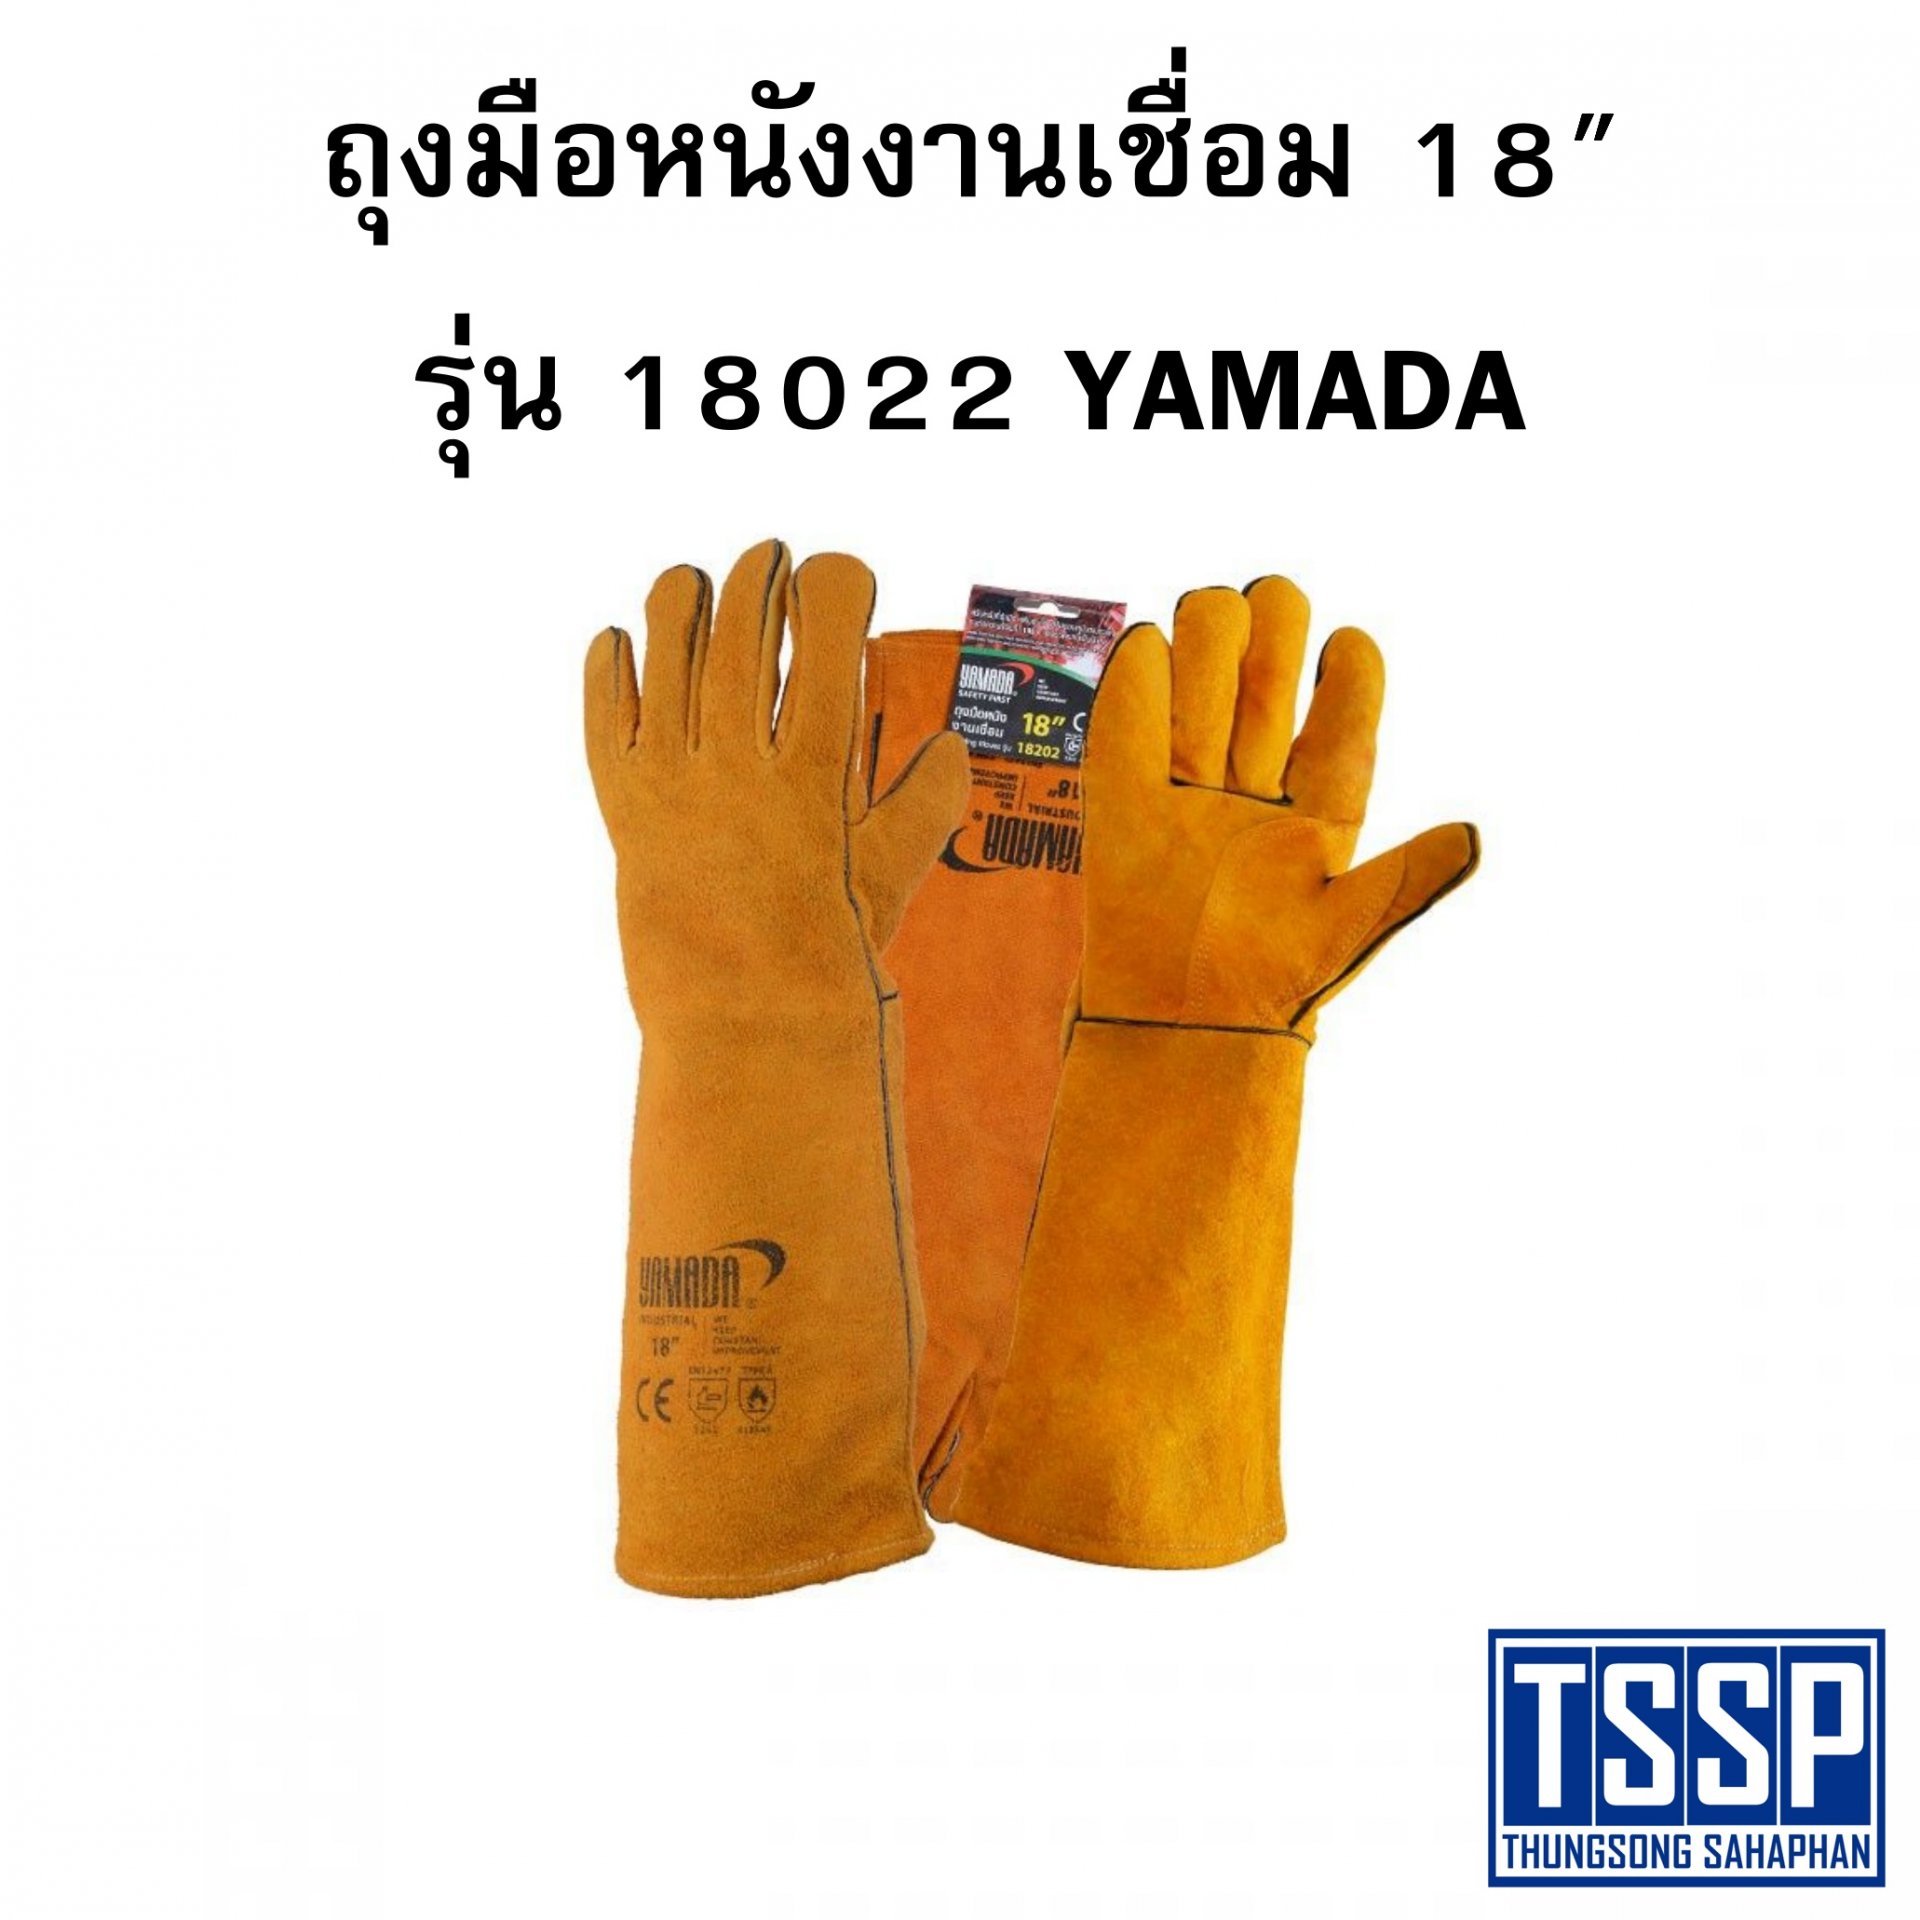 ถุงมือหนังงานเชื่อม 18" รุ่น 18022 YAMADA